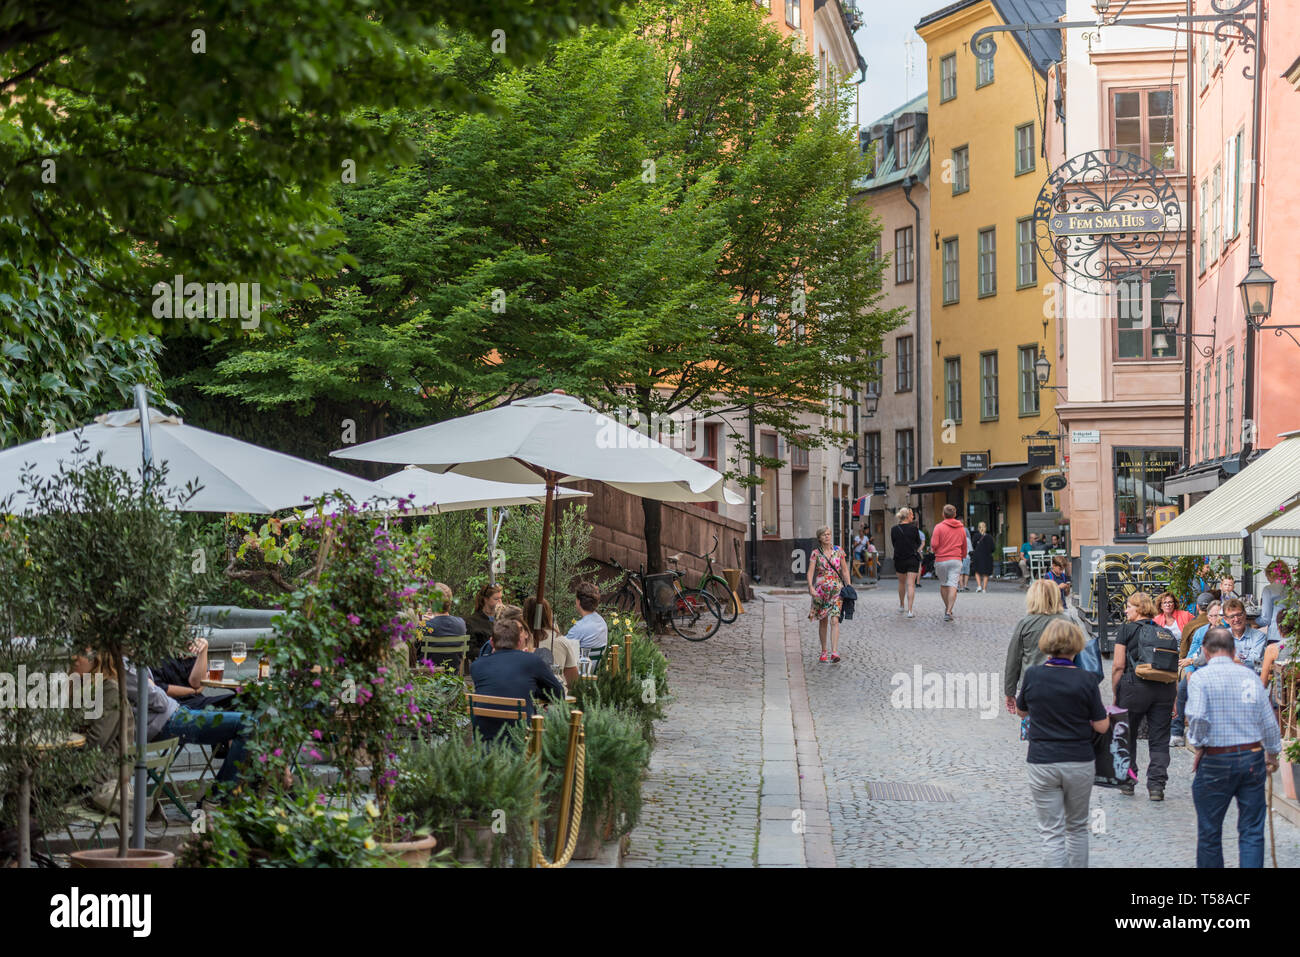 Les touristes et habitants de profiter du cadre historique coloré de la Stockholm Gamla Stan (vieille ville). Banque D'Images